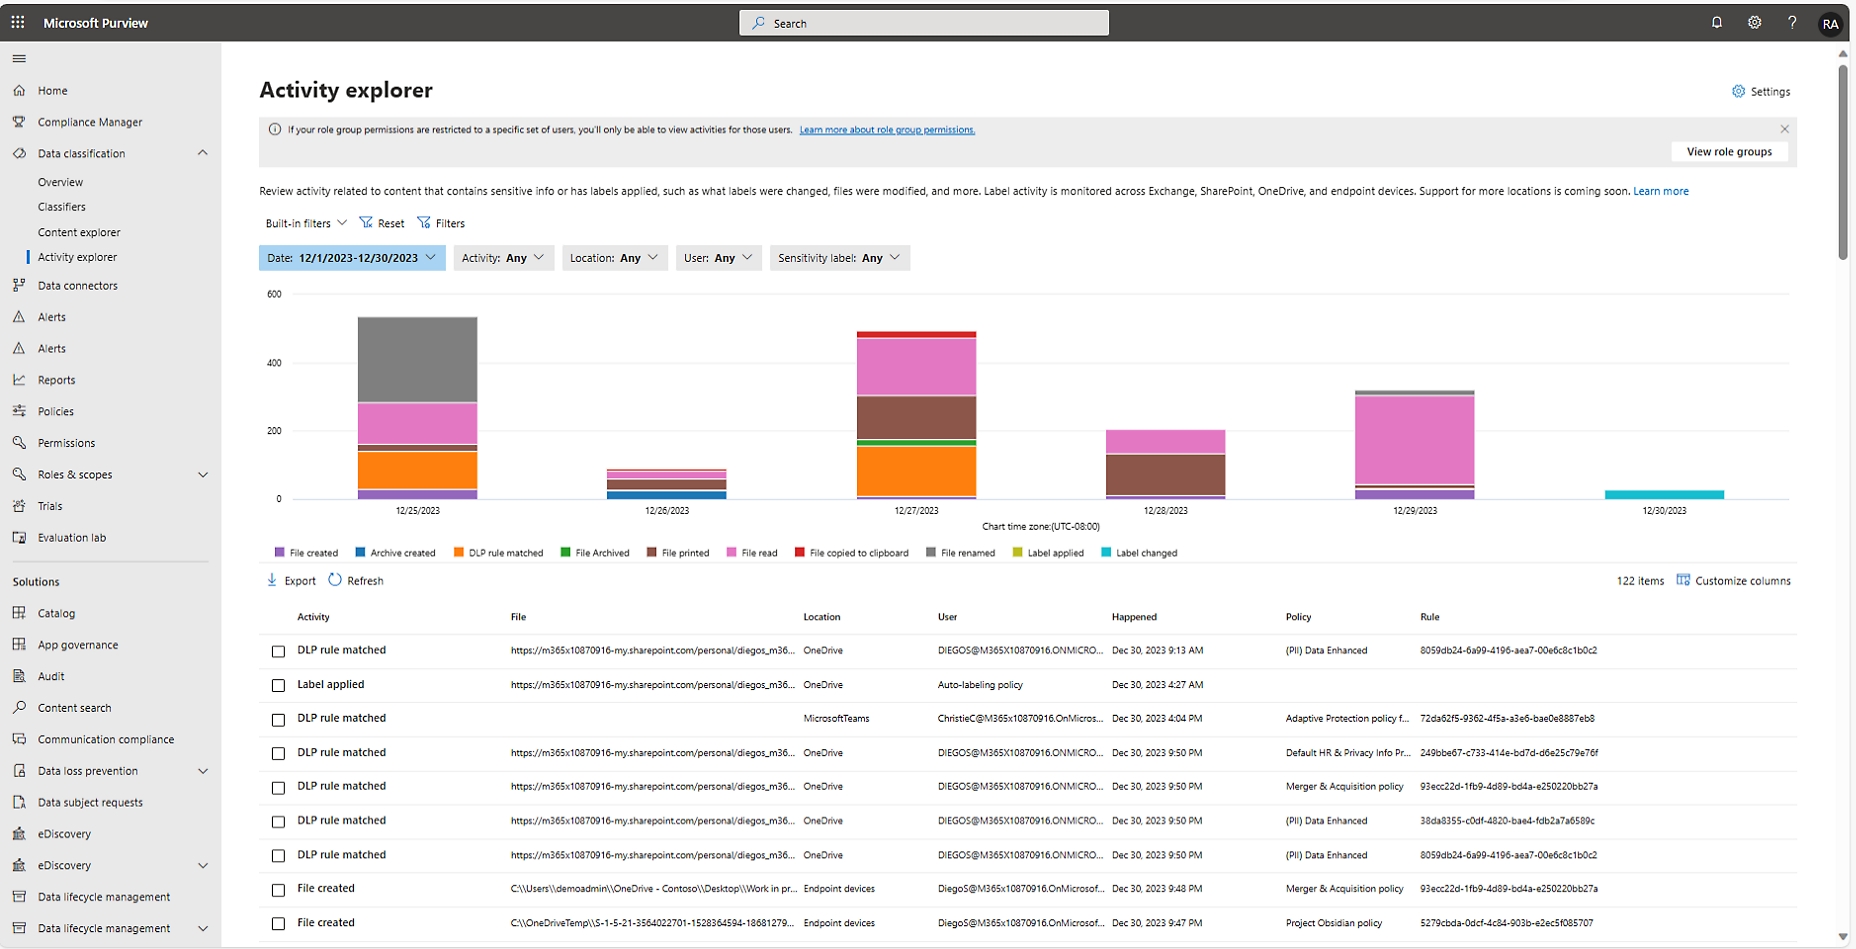 ממשק סייר הפעילות של מרכז השותפים של Microsoft, המציג גרף וטבלה עם נתונים על פעילויות משתמשים.